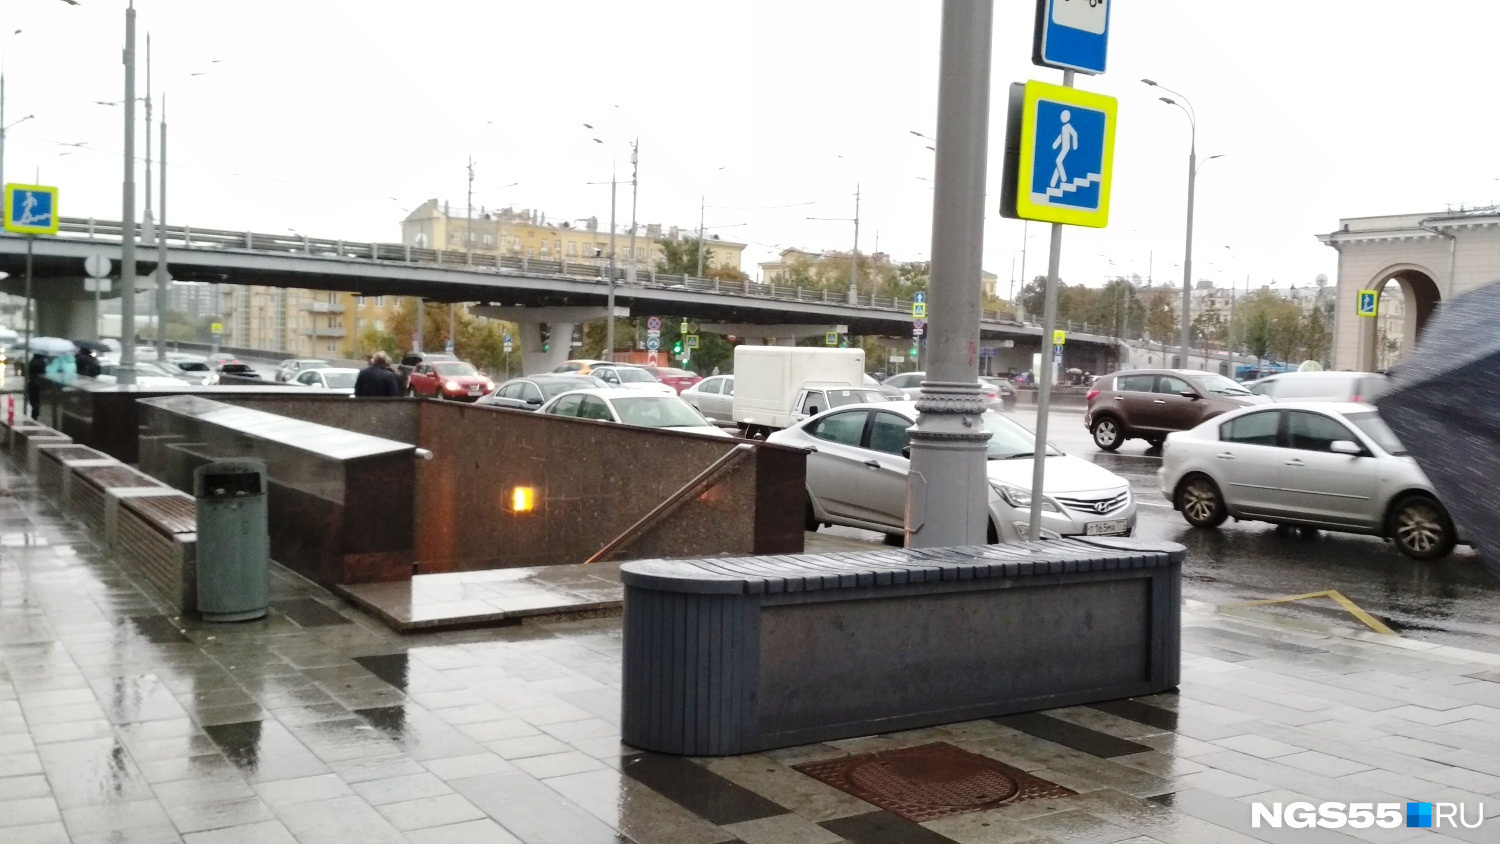 В Москве бетонные блоки у переходов со временем переделали в лавочки для пешеходов